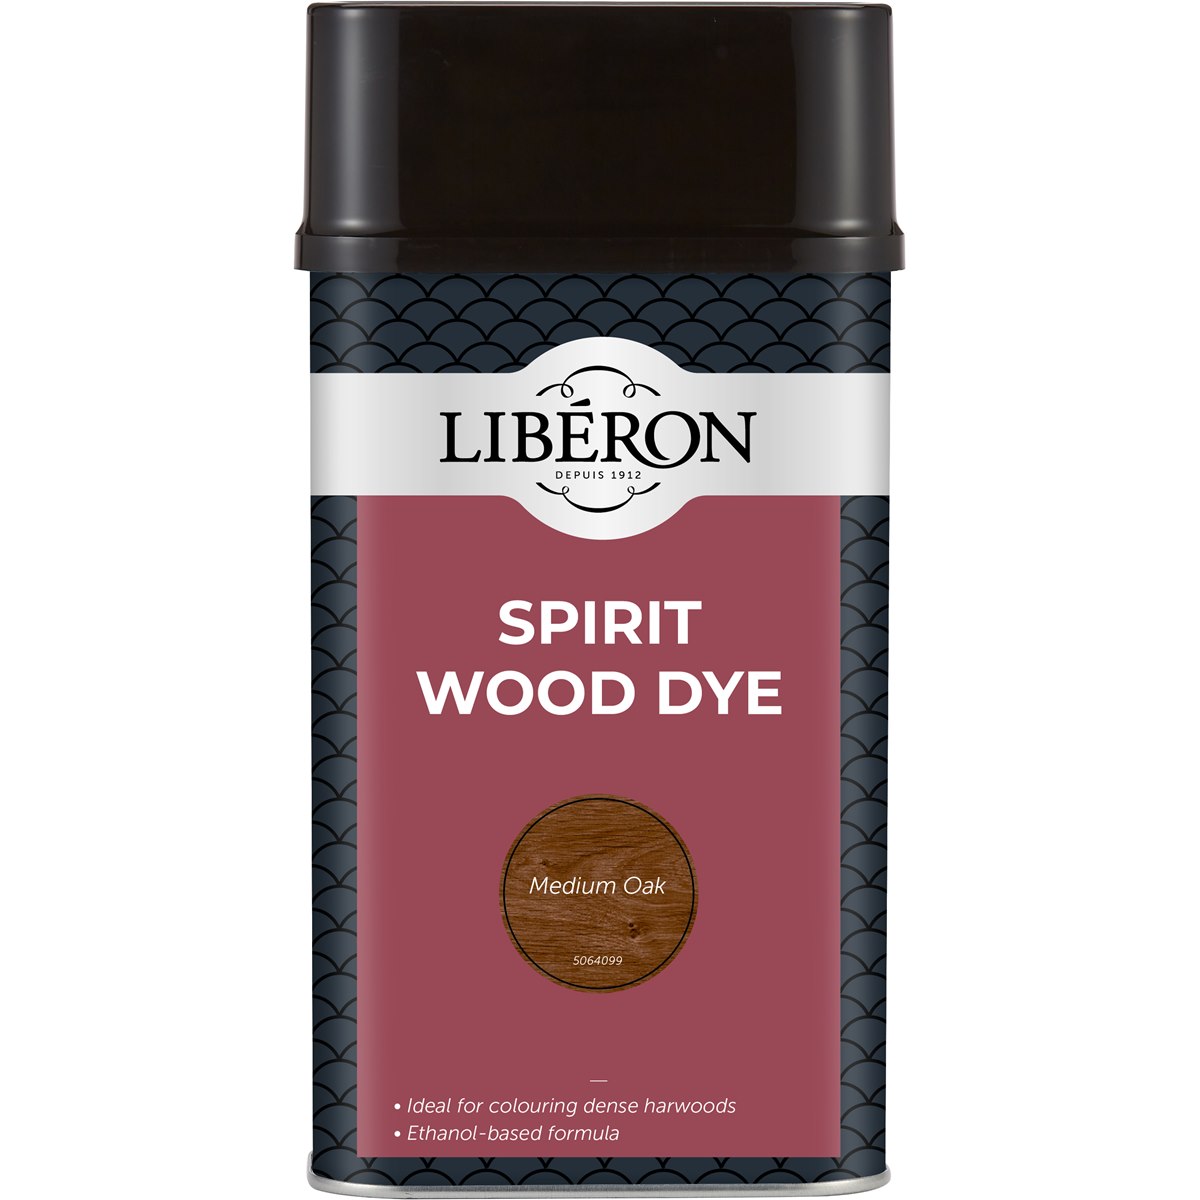 Liberon Spirit Wood Dye Medium Oak 1 Litre